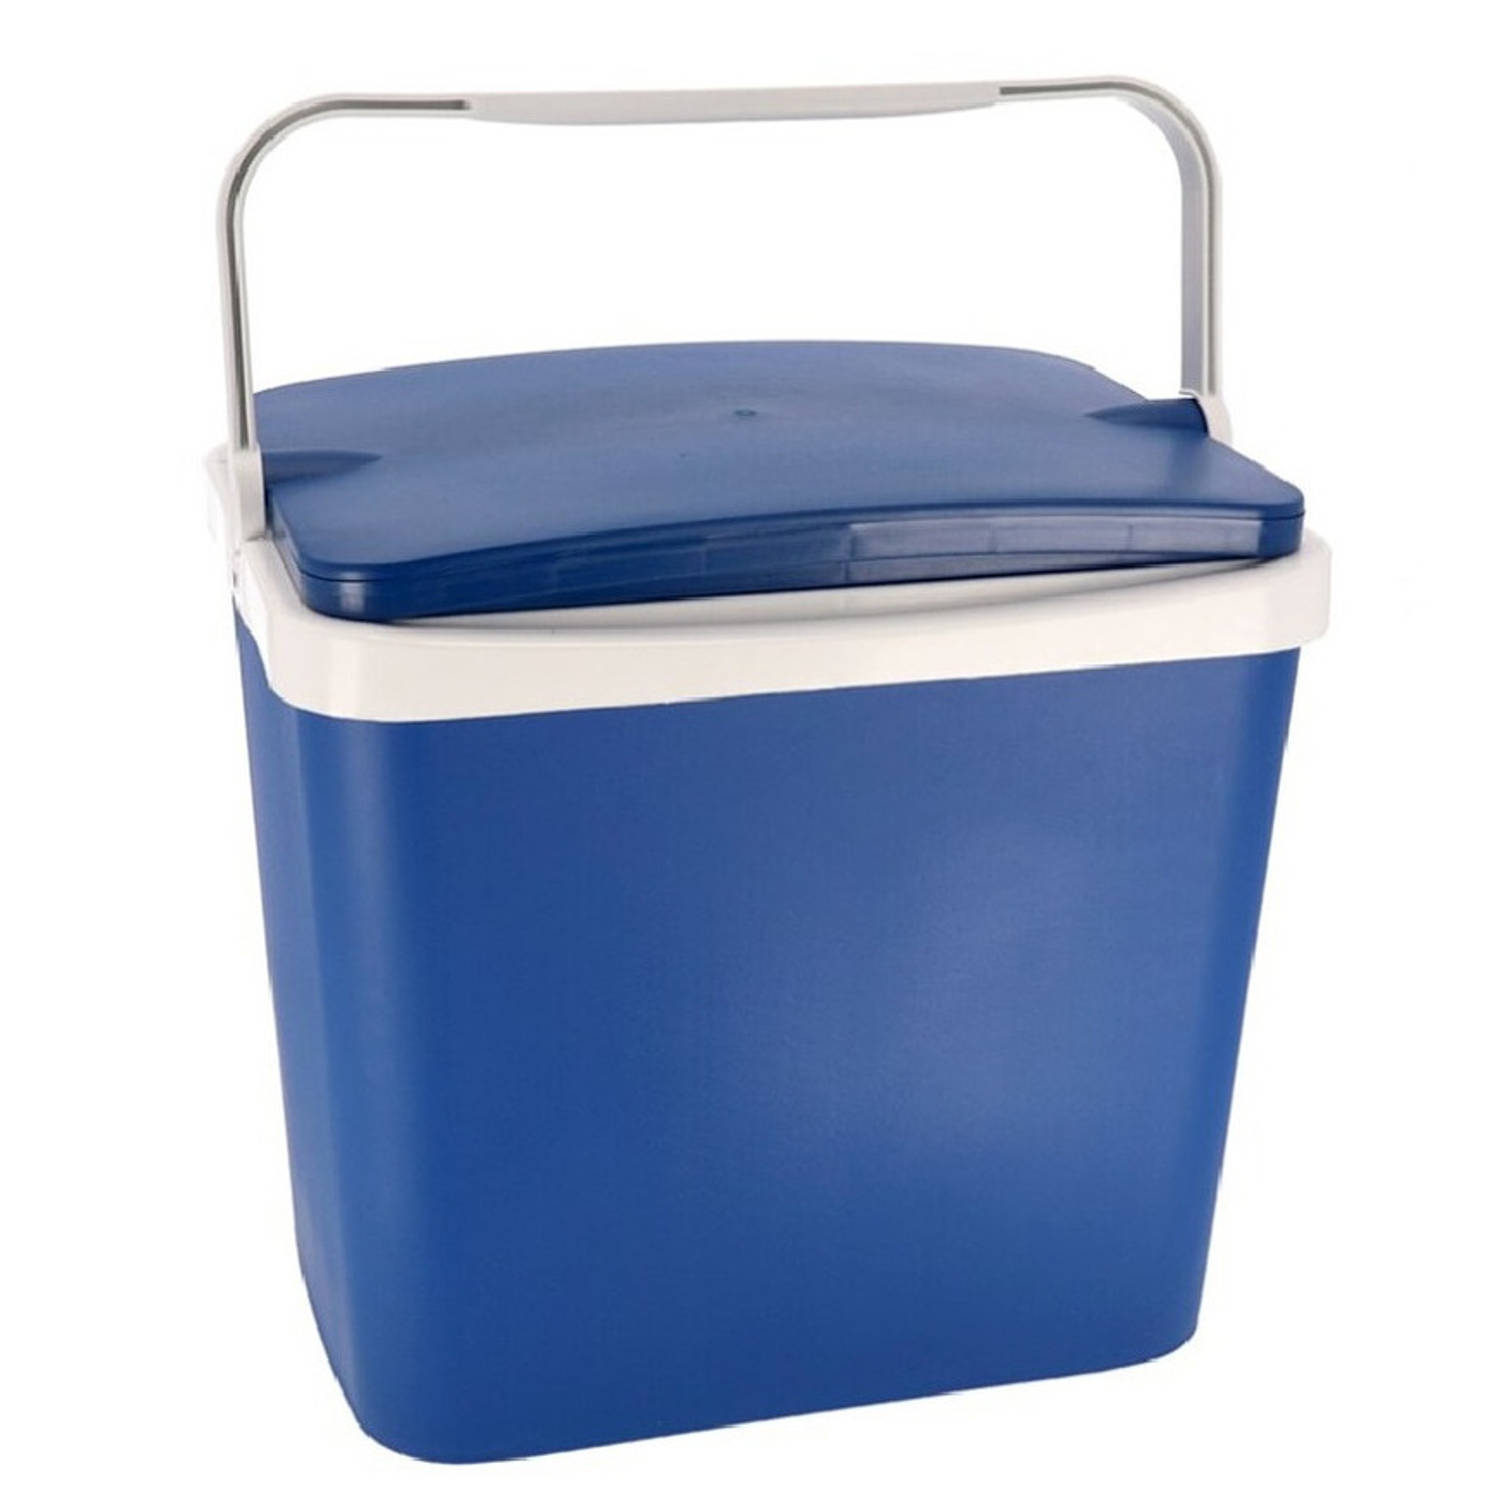 Koelbox donkerblauw 29 liter 40 x 29 x 44 cm - Koelboxen